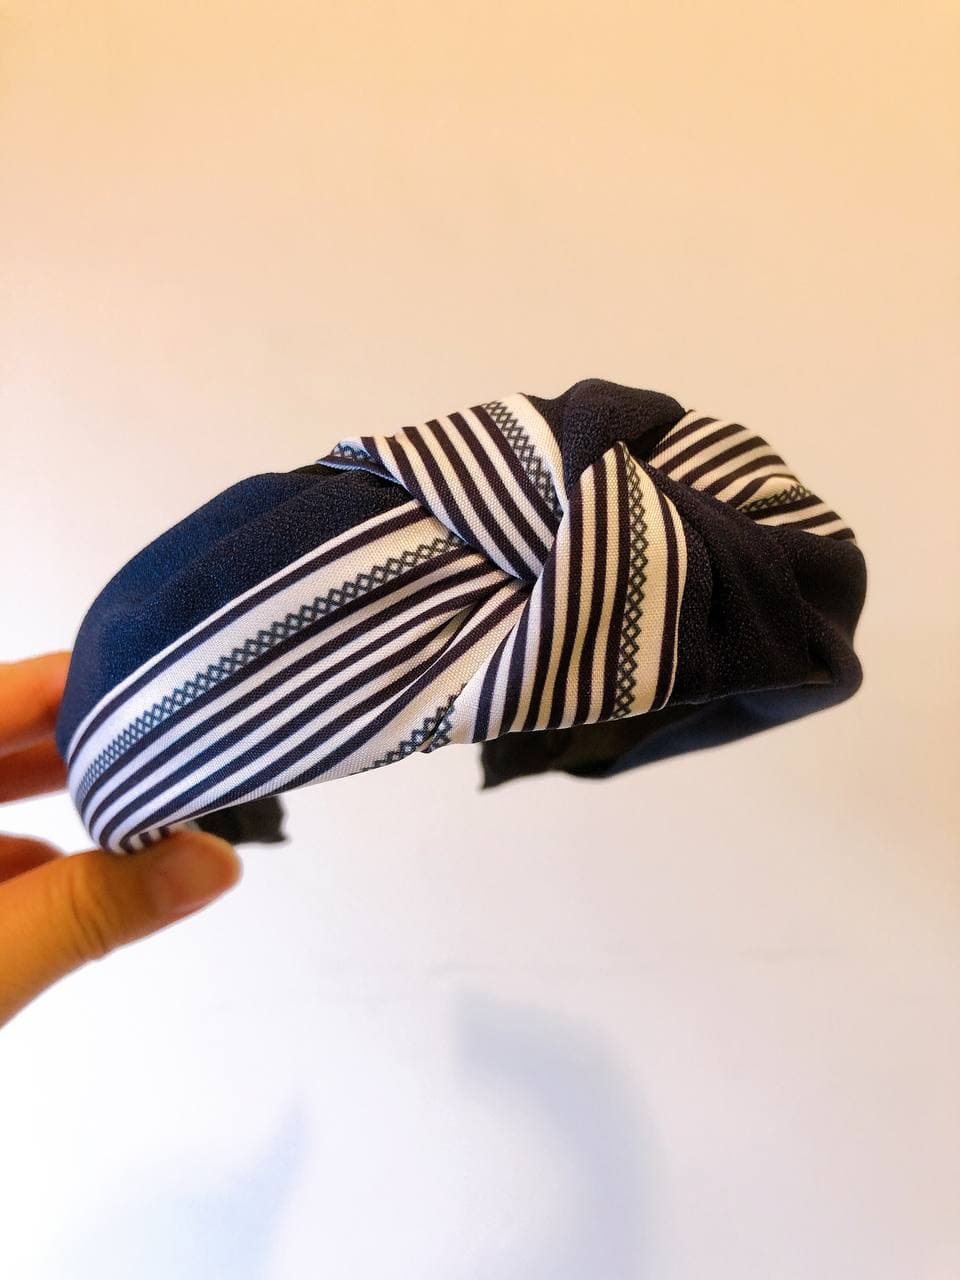 韓式人工髮箍- 藍白色間條髮箍